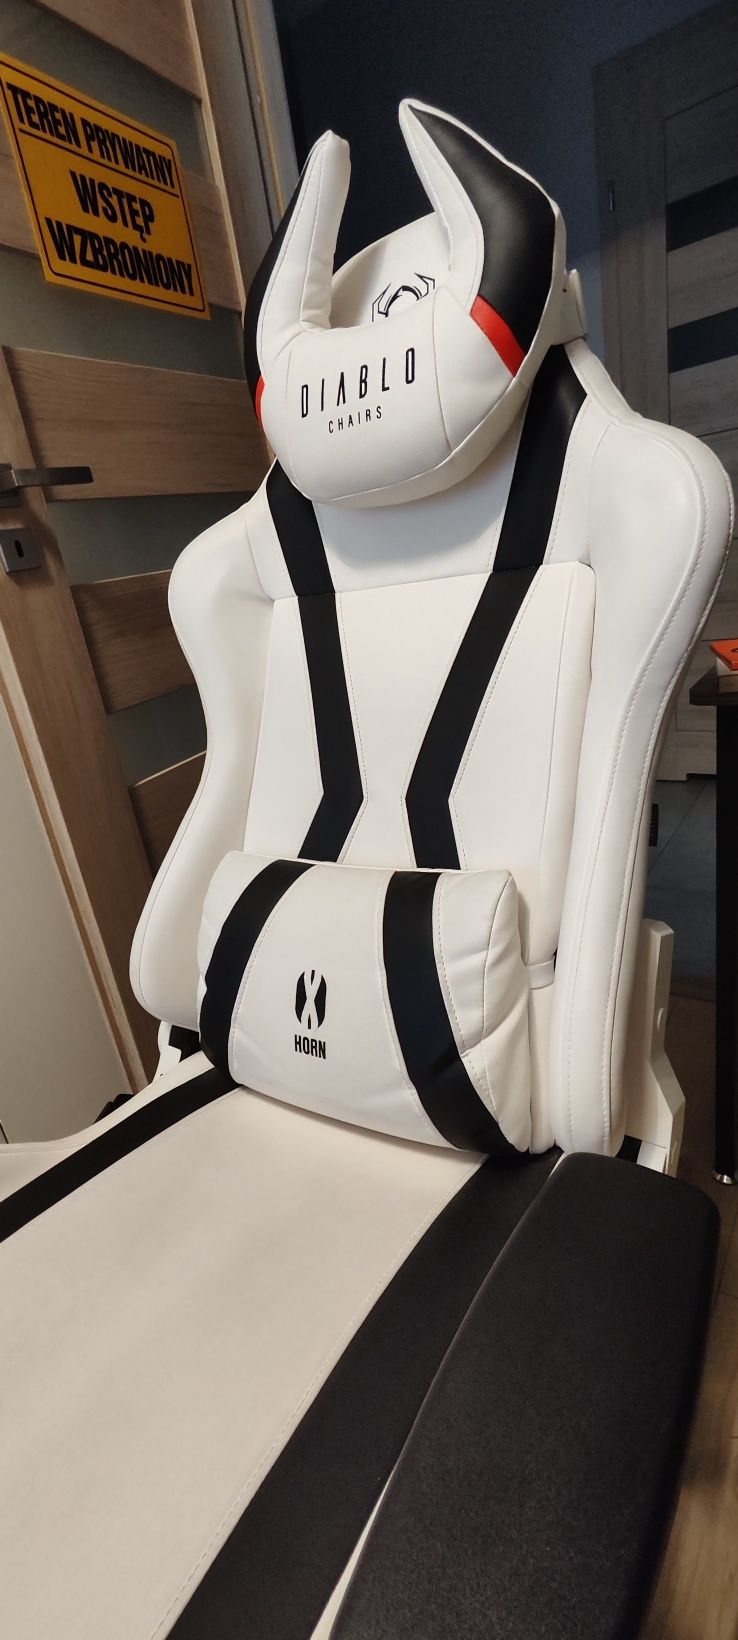 Fotel gamingowy Diablo Chairs X-Horn 2.0 KING SIZE biały JAK NOWY